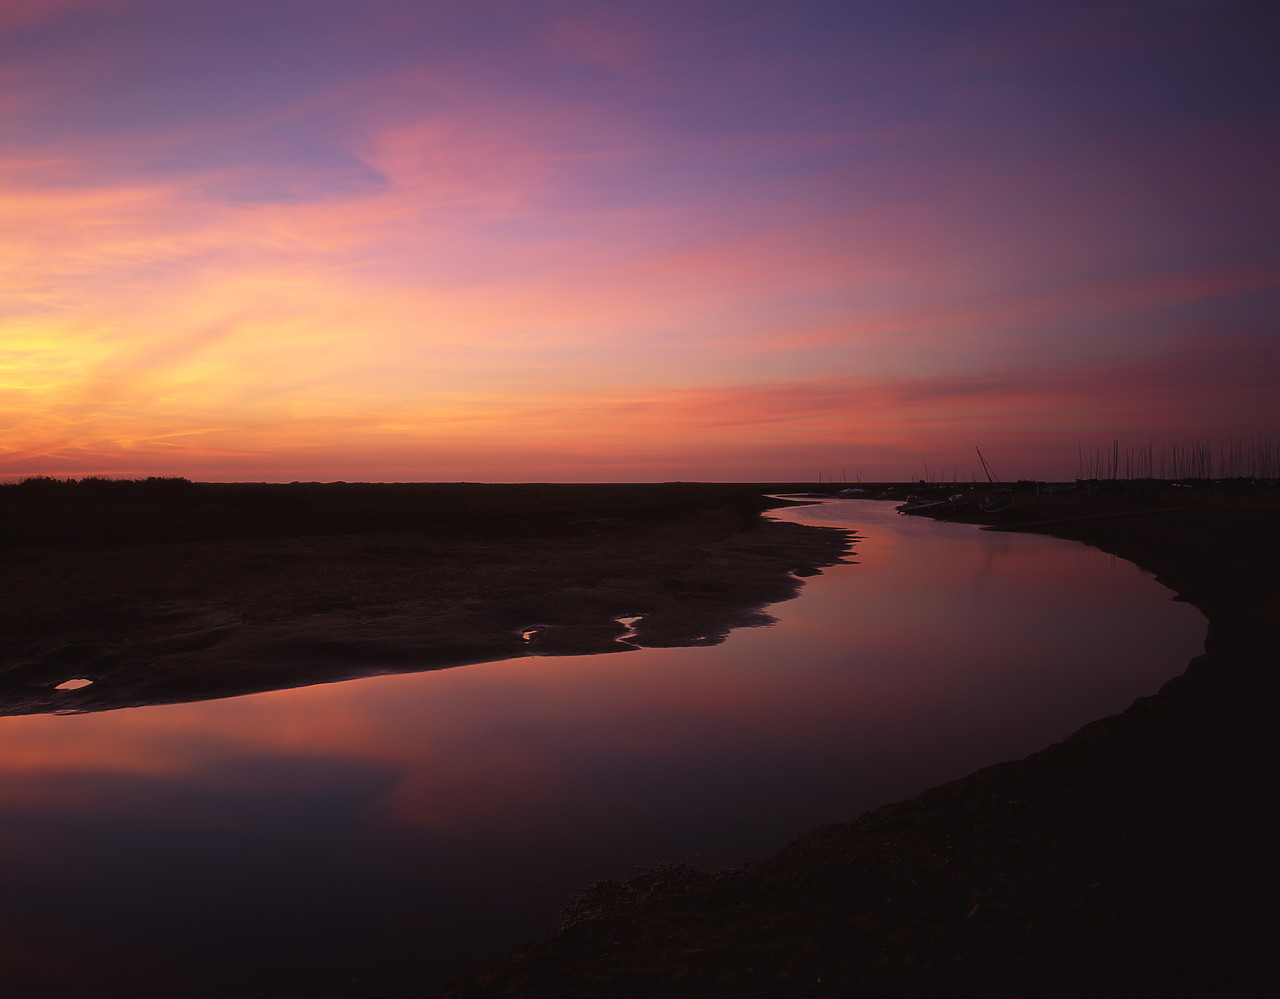 #010658-1 - Sunset over Blakeney Harbour, Blakeney, Norfolk, England